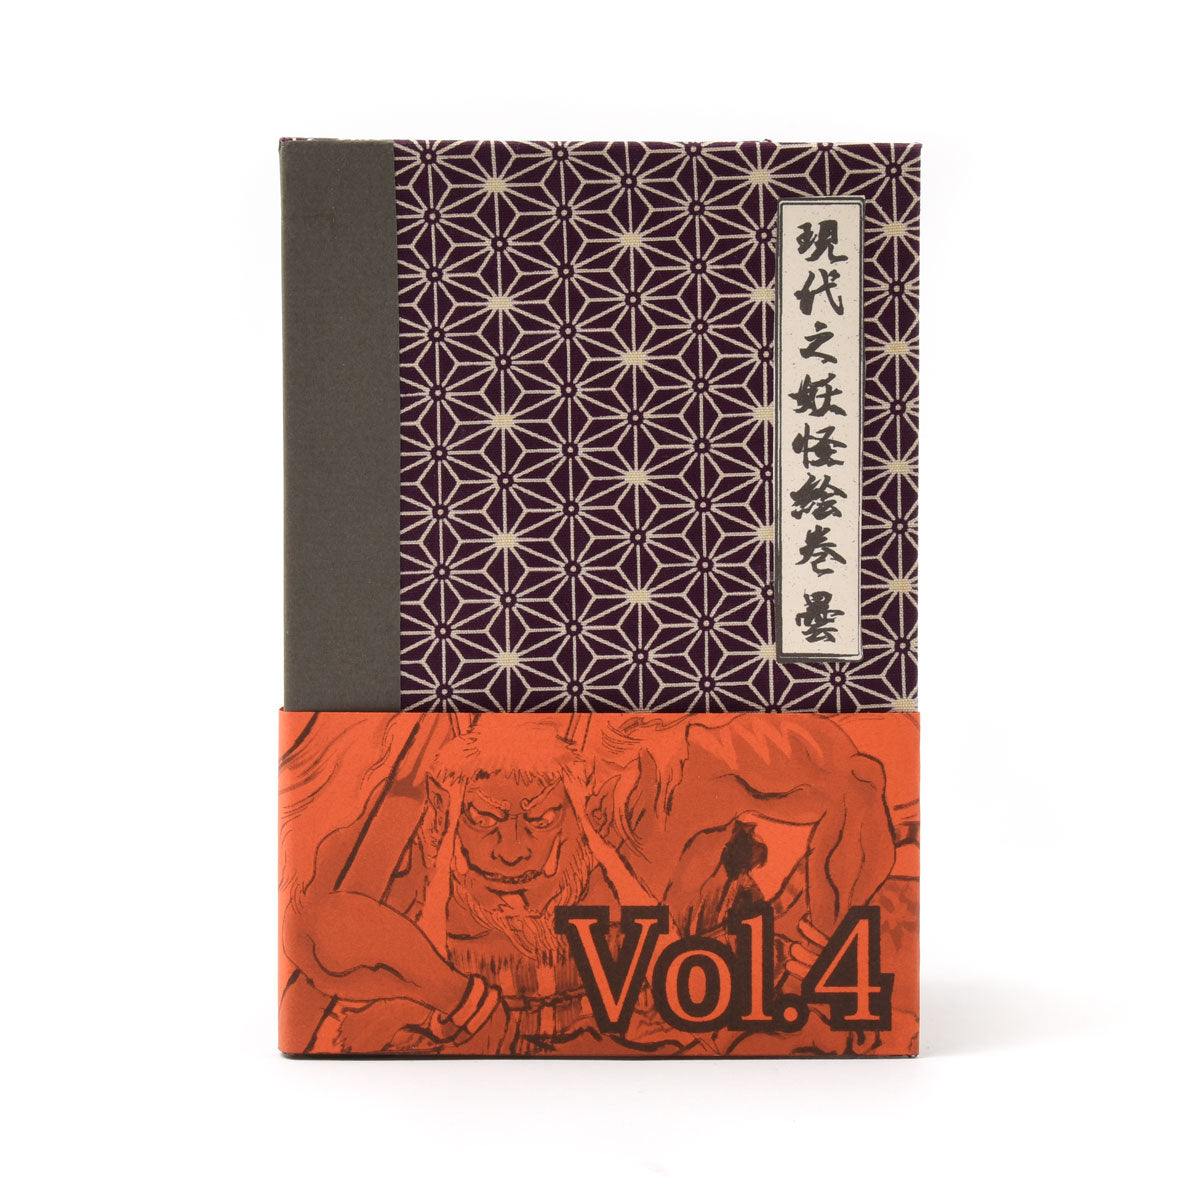 Yokai Volume Four